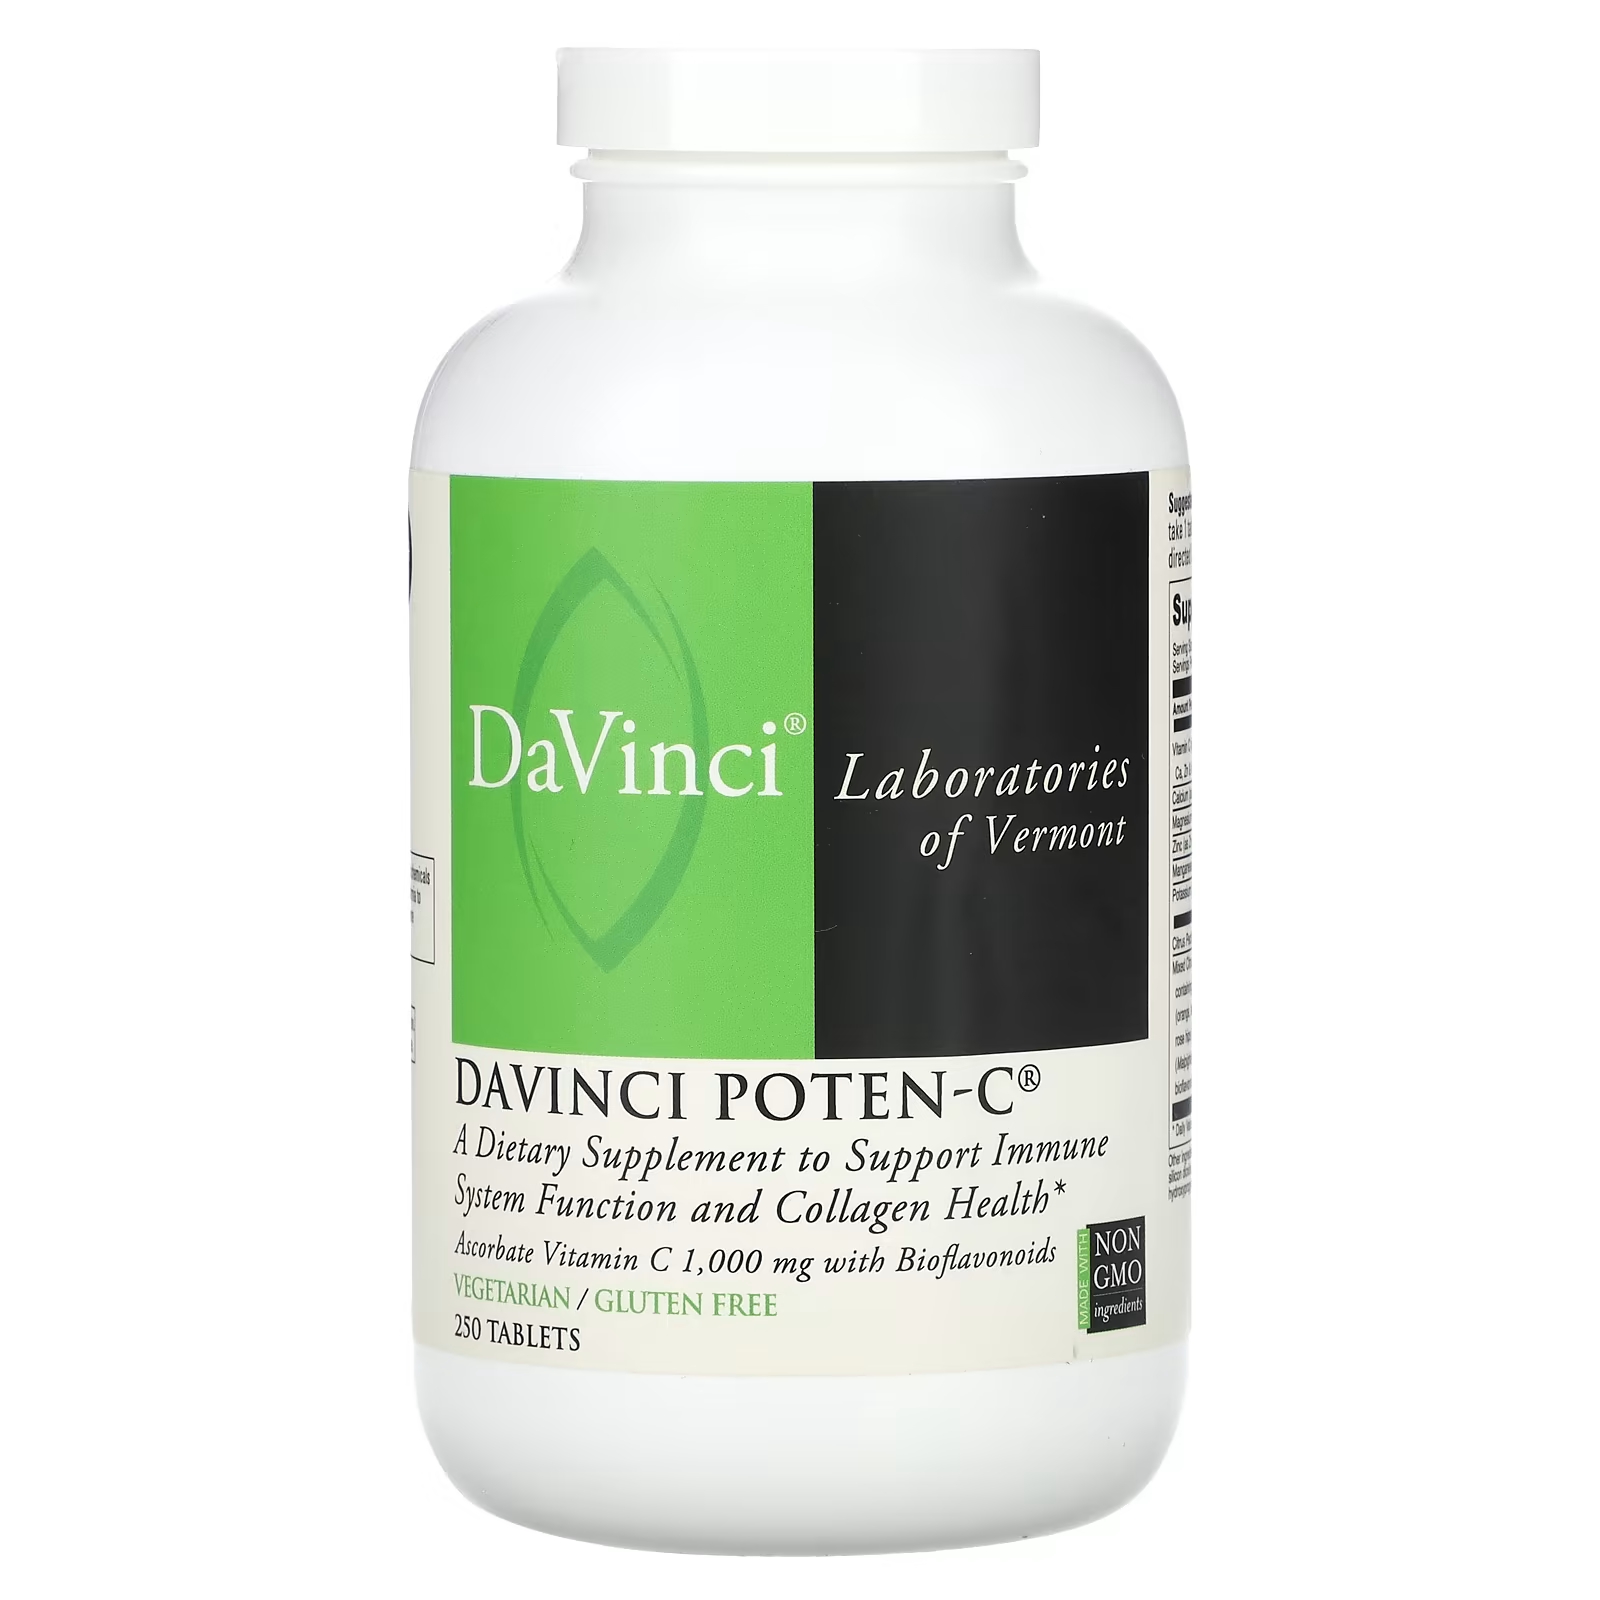 Пищевая добавка DaVinci Laboratories of Vermont Davinci Poten-C, 250 таблеток